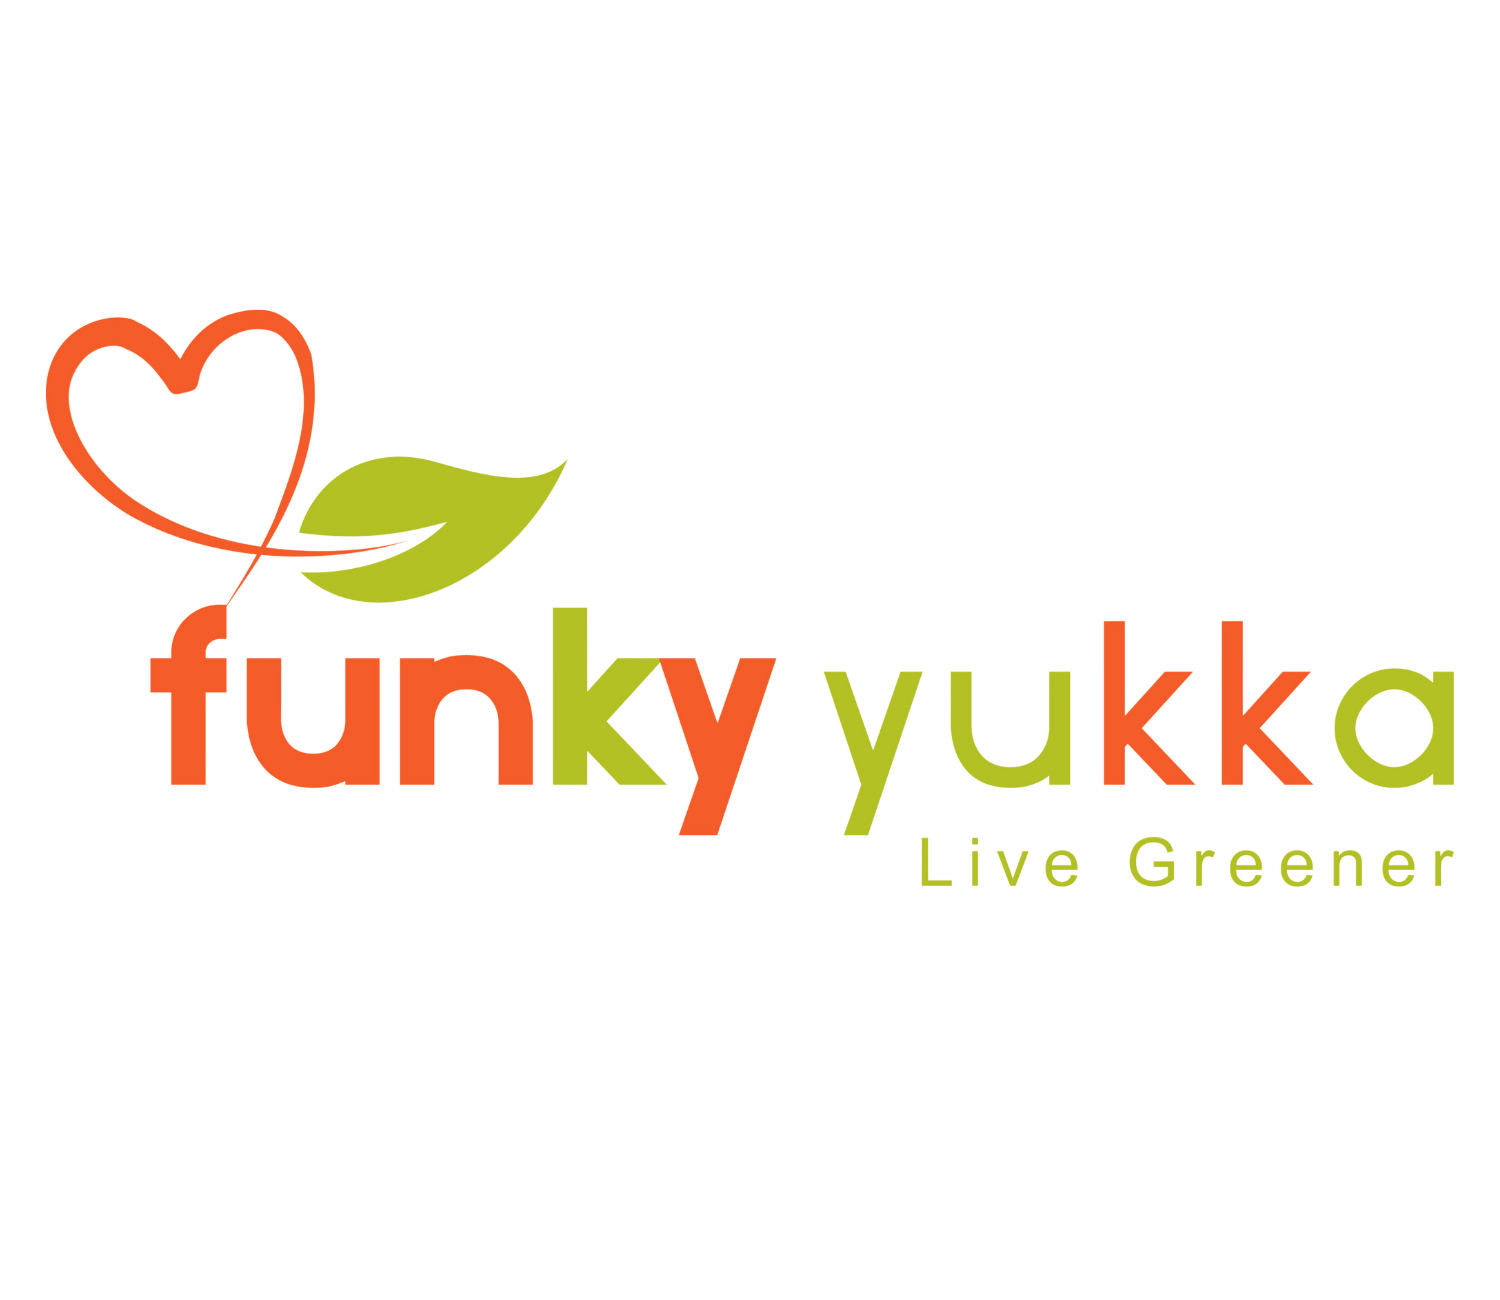 Funky Yukka